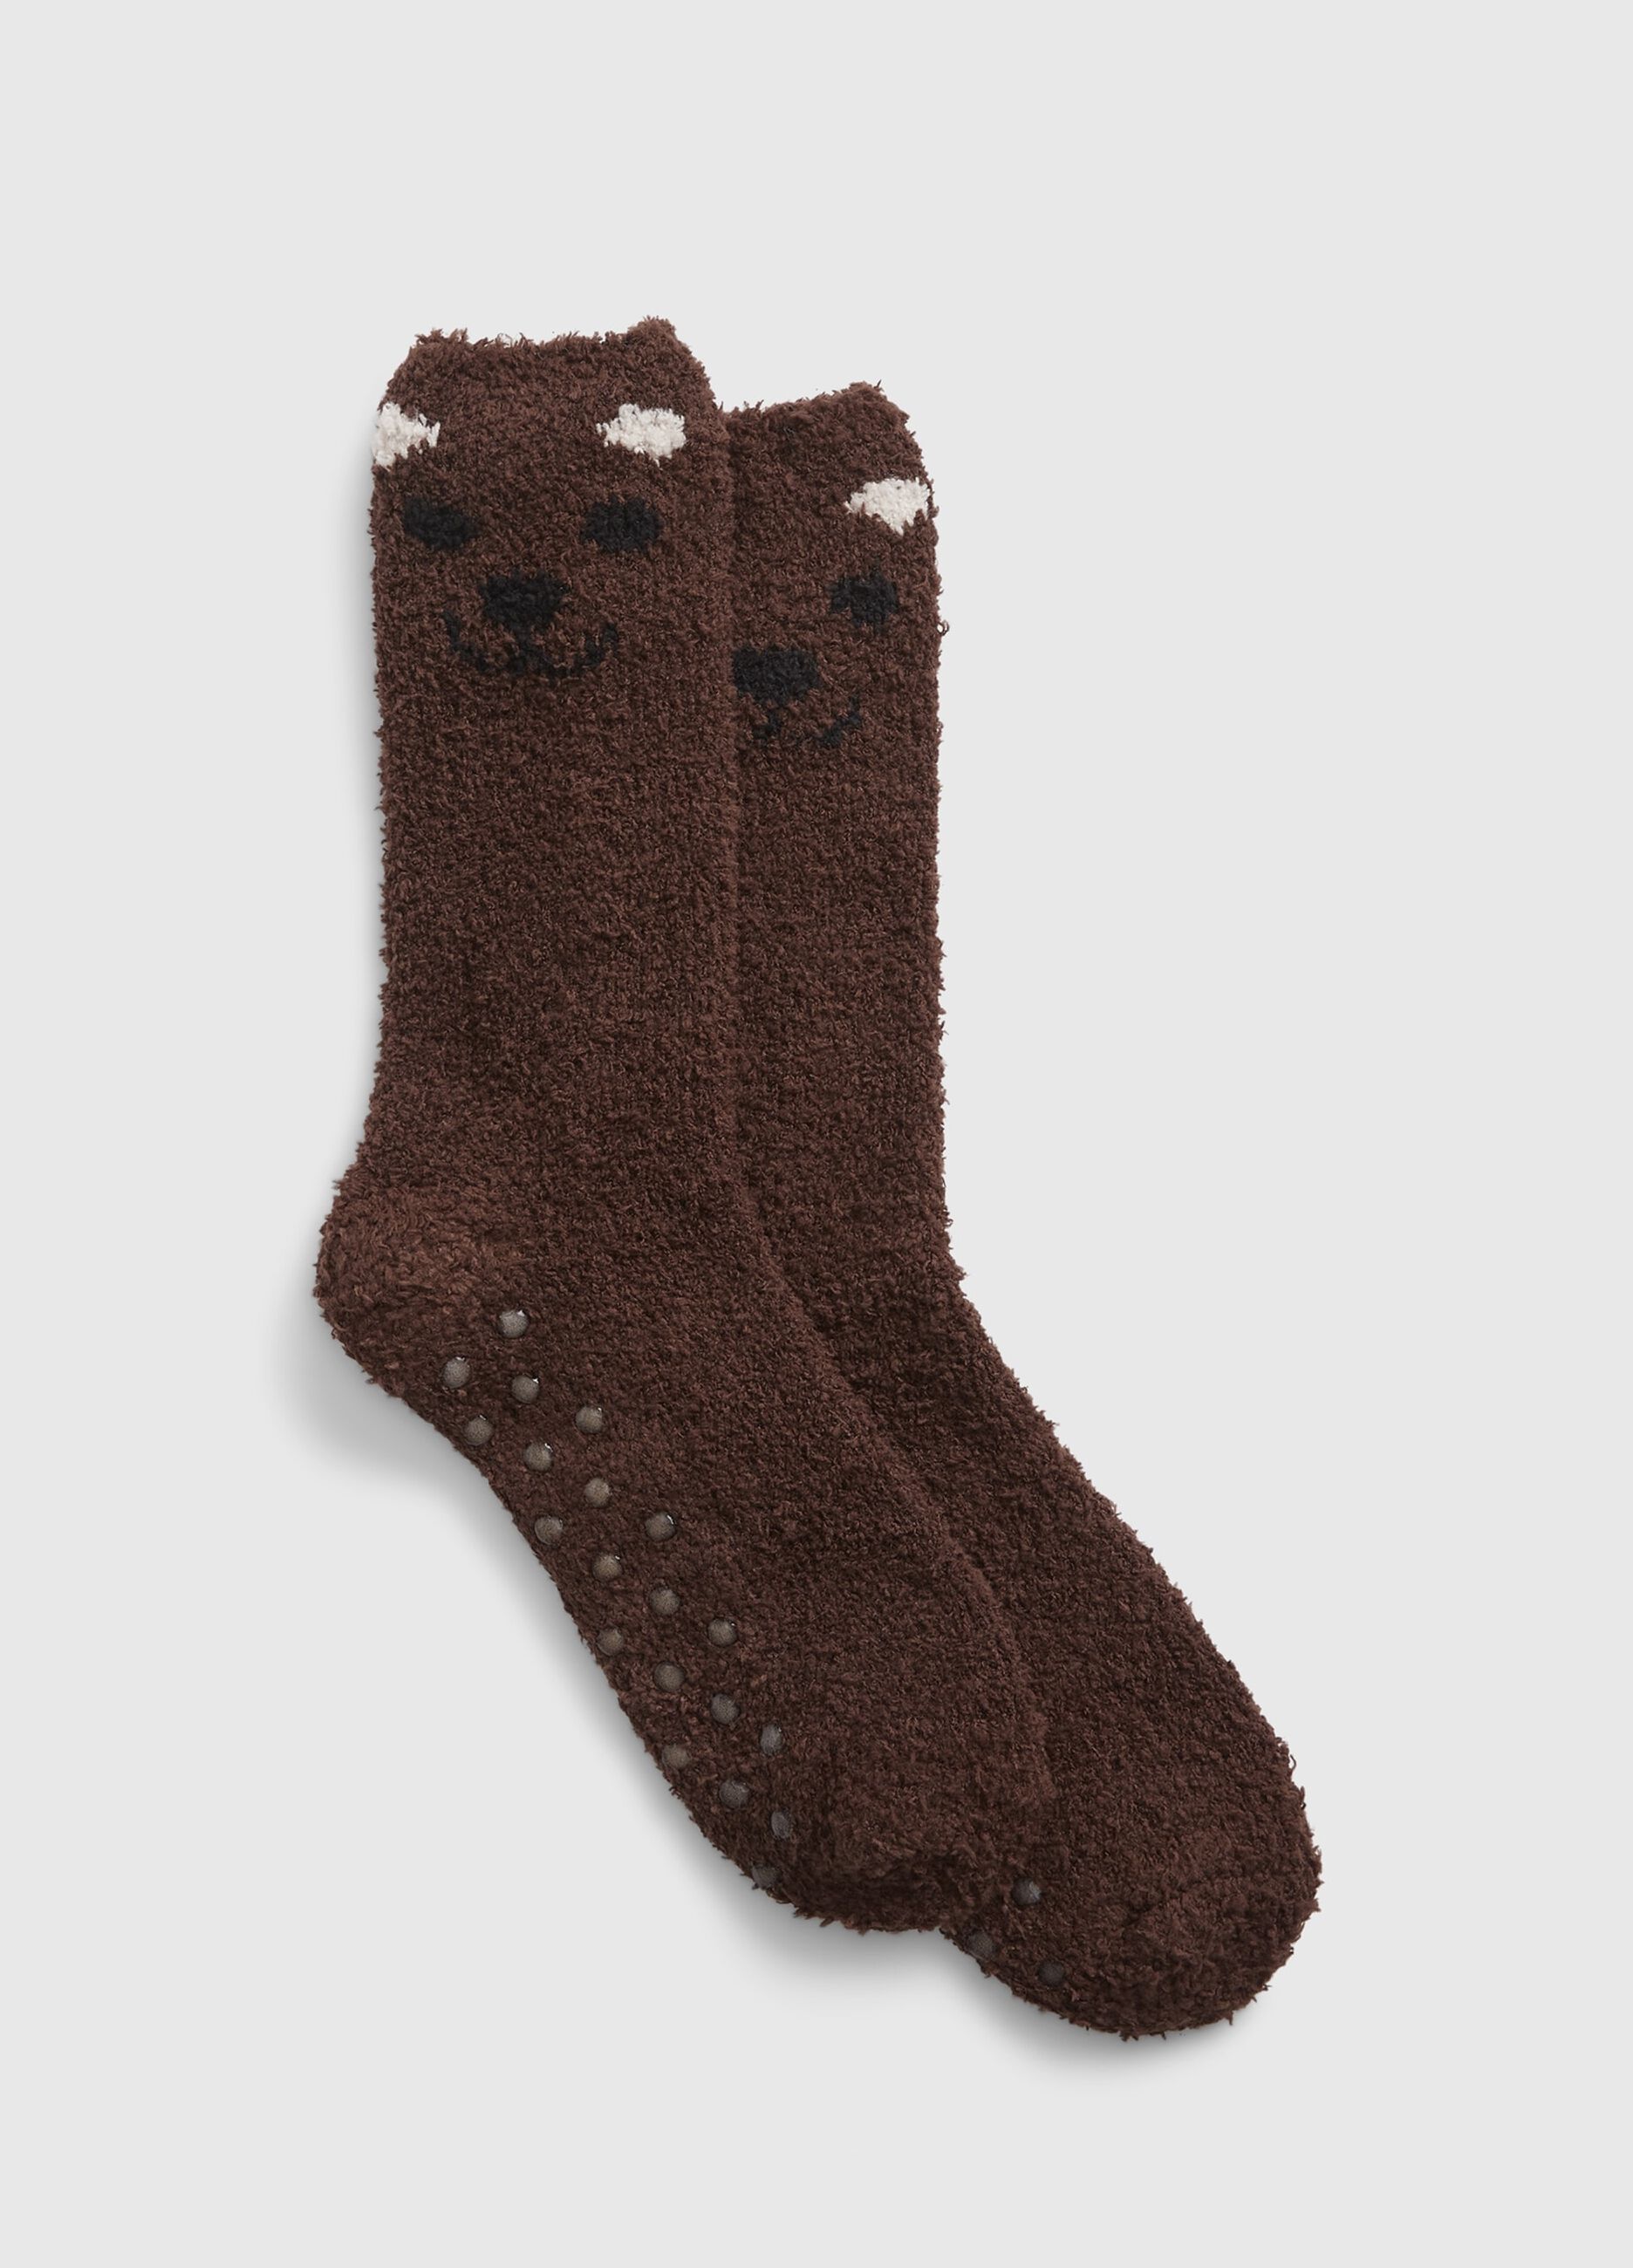 Slipper socks with Bear design